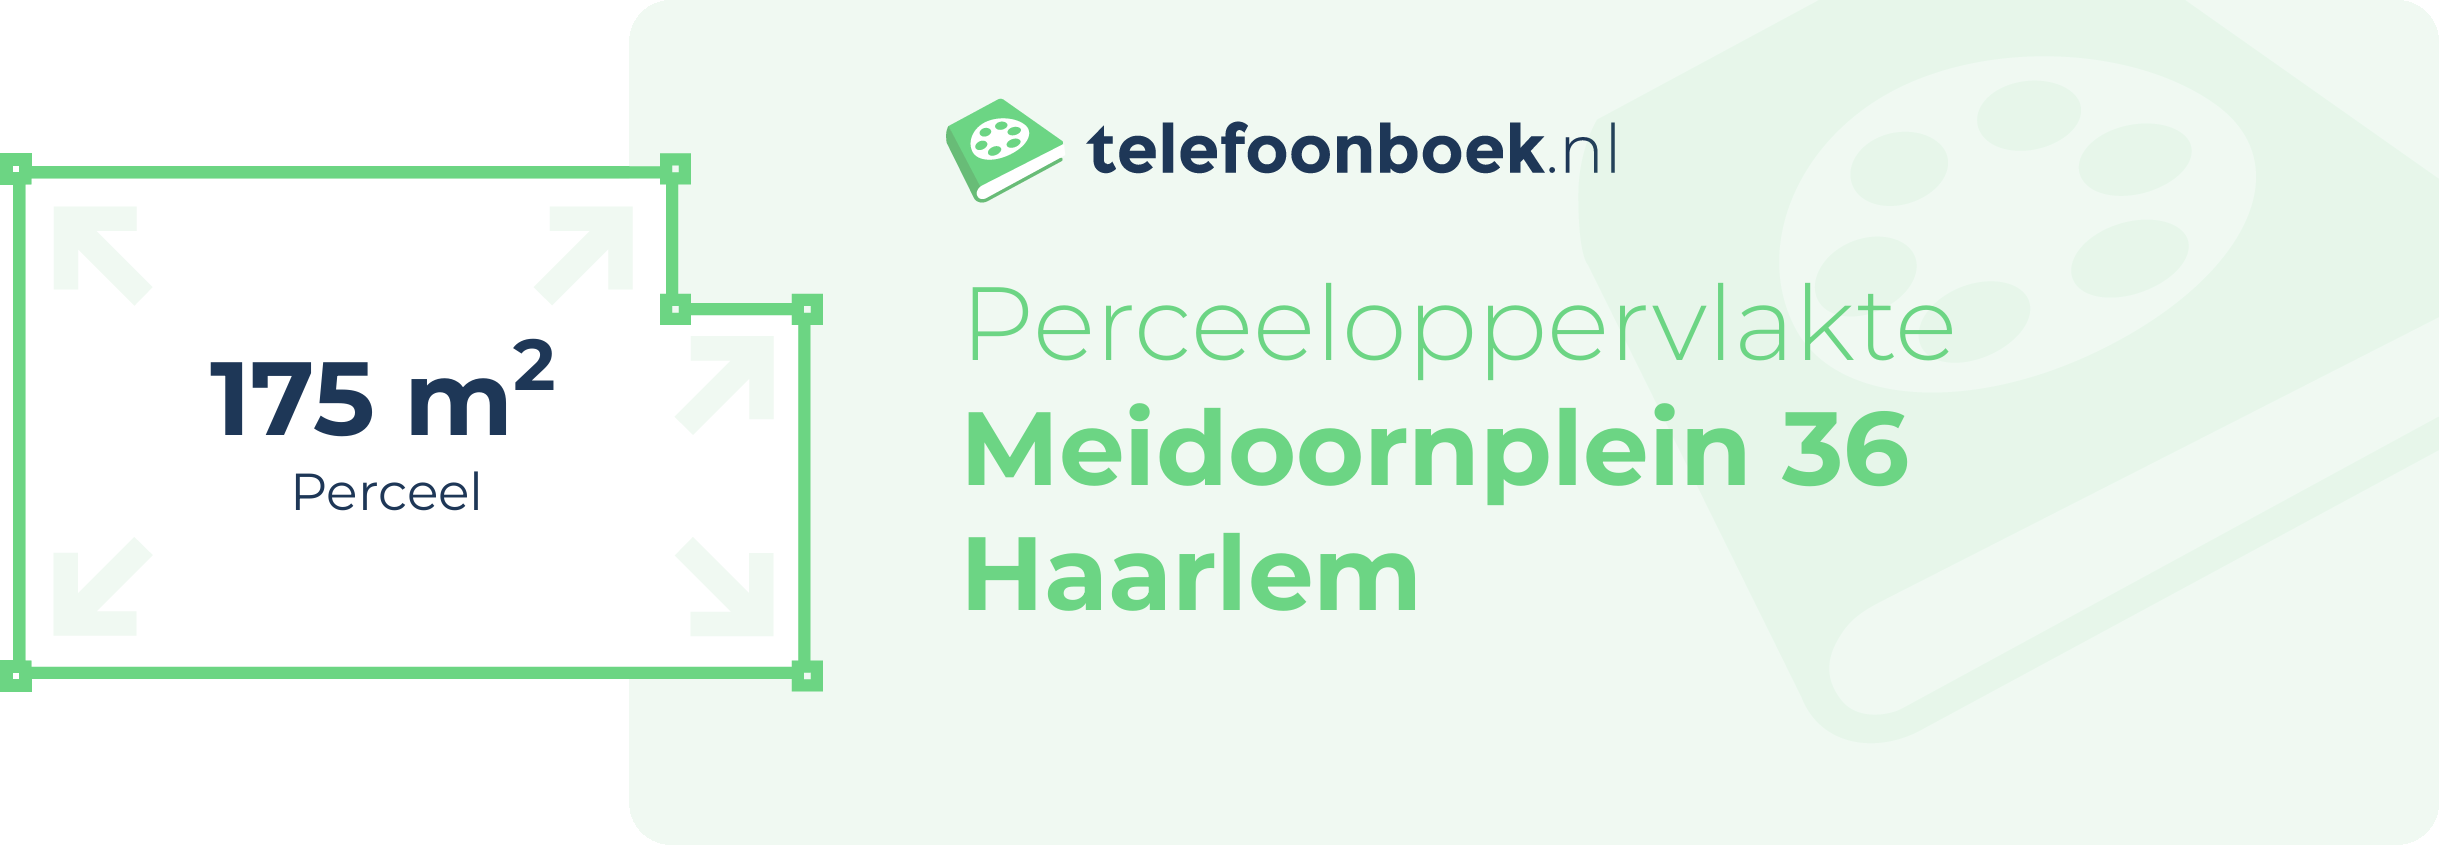 Perceeloppervlakte Meidoornplein 36 Haarlem